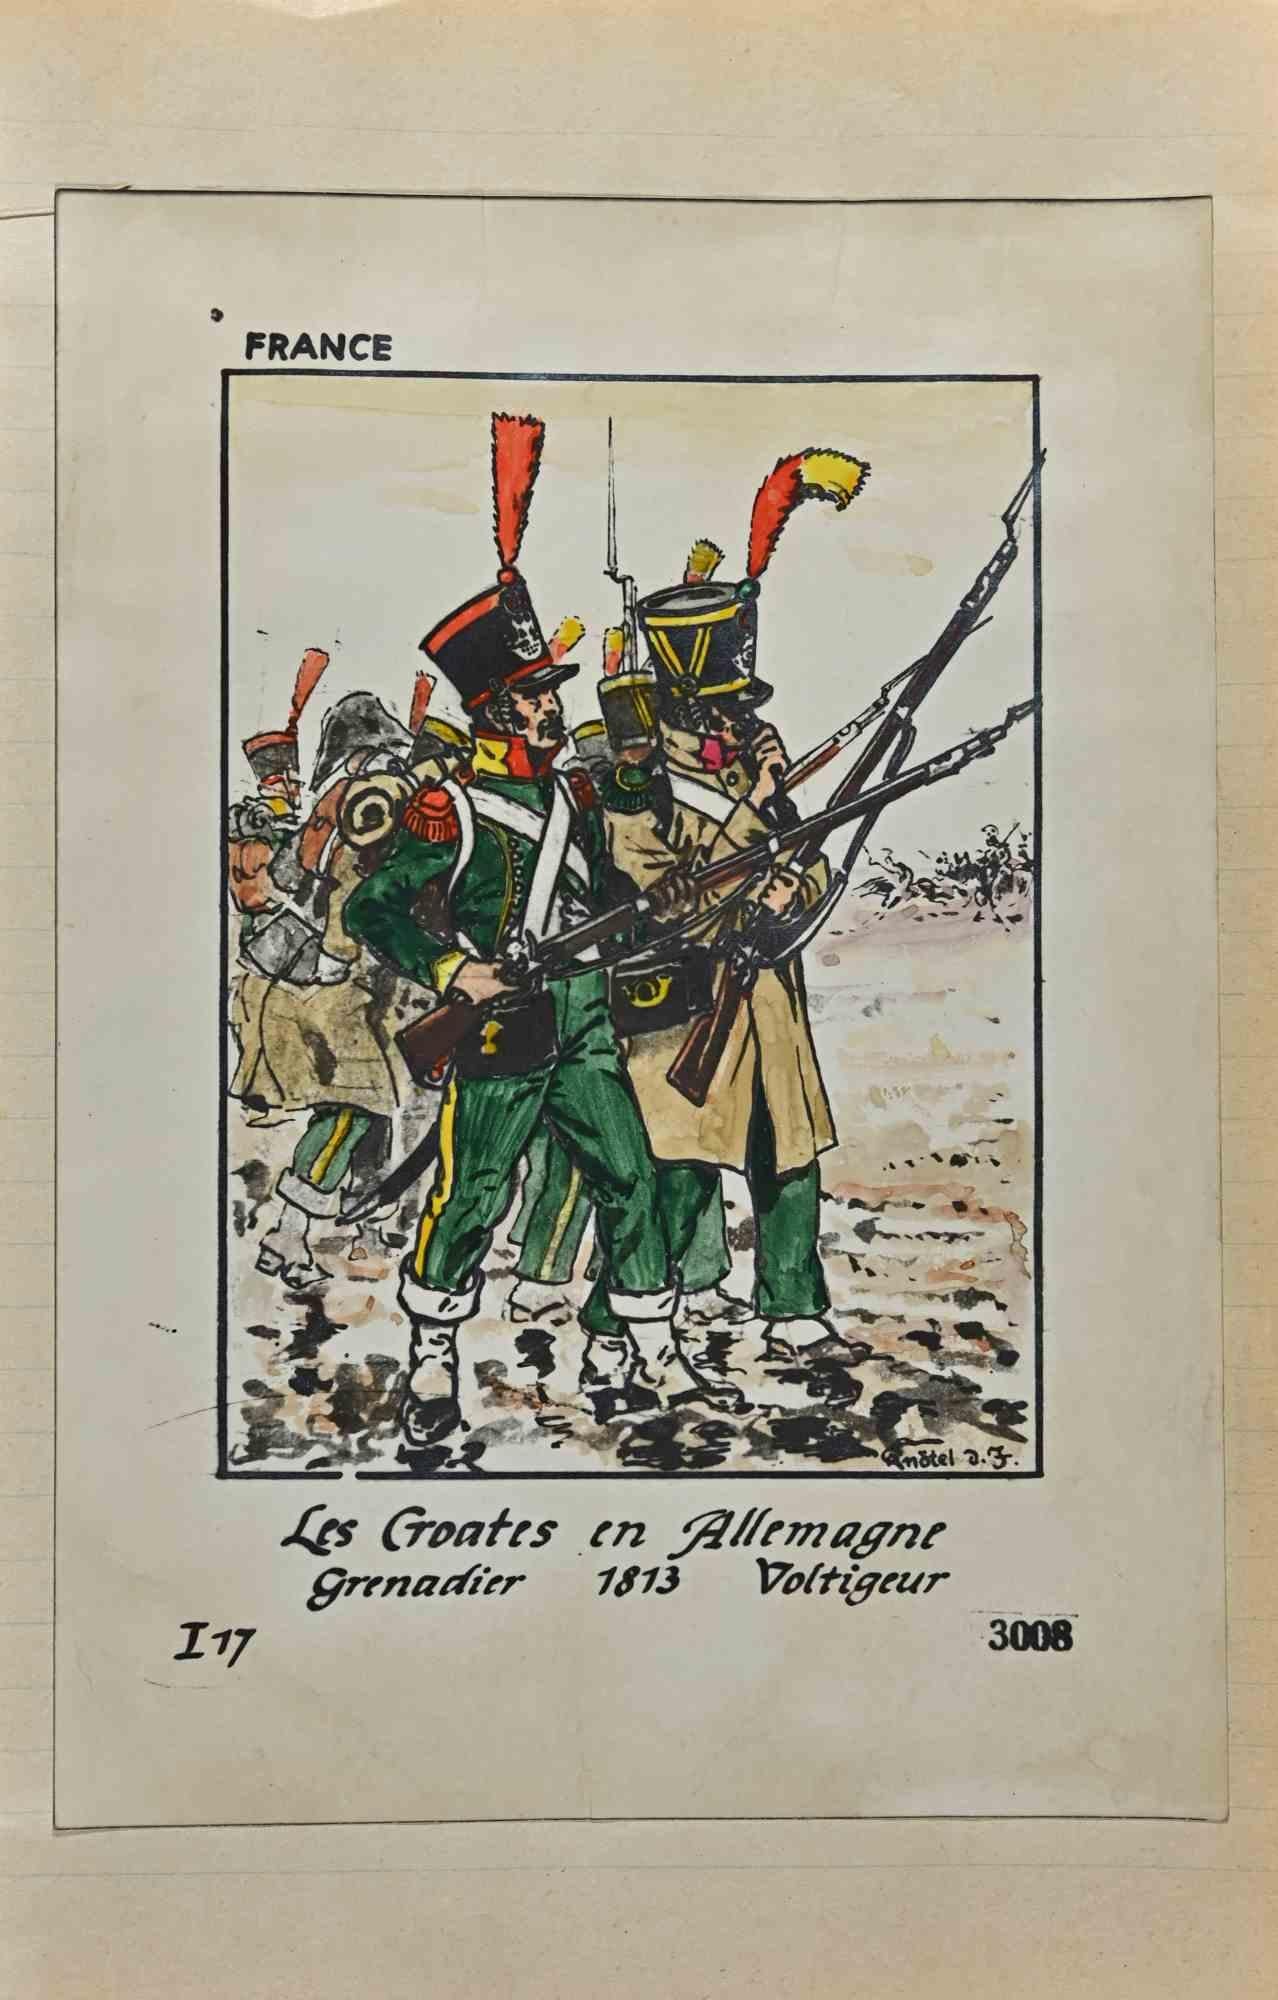 Le Croates en Allemagne - Grenadier 1813 - Drawing par Herbert Knotel - Années 1940